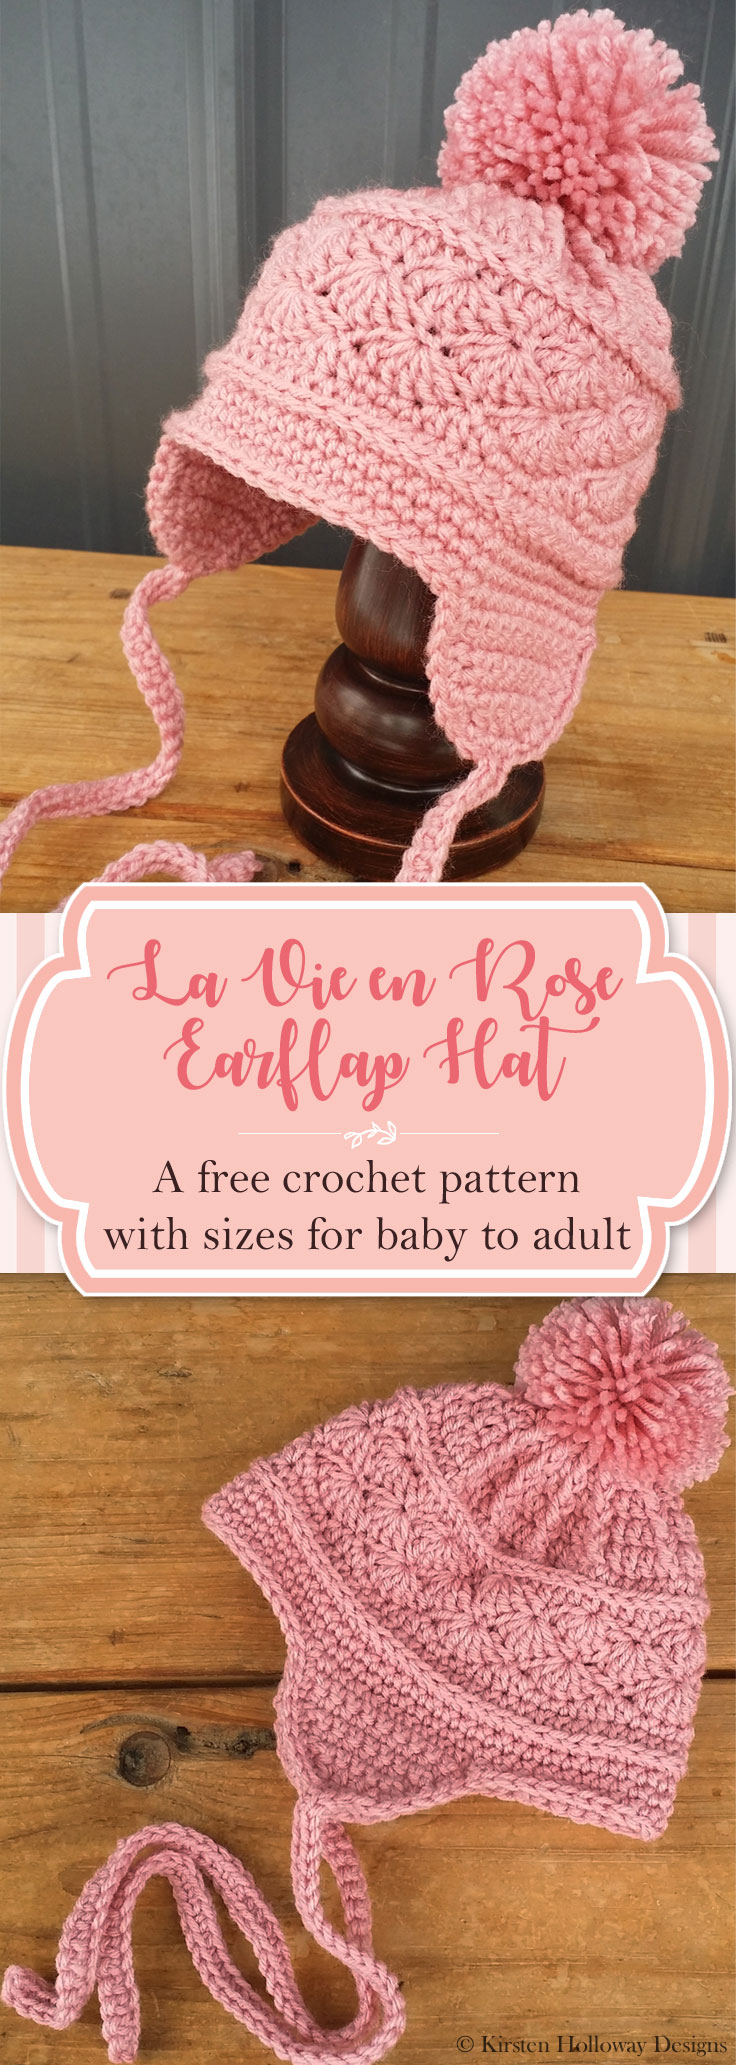 Single Crochet Earflap Hat Pattern Pattern La Vie En Rose Earflap Hat Kirsten Holloway Designs